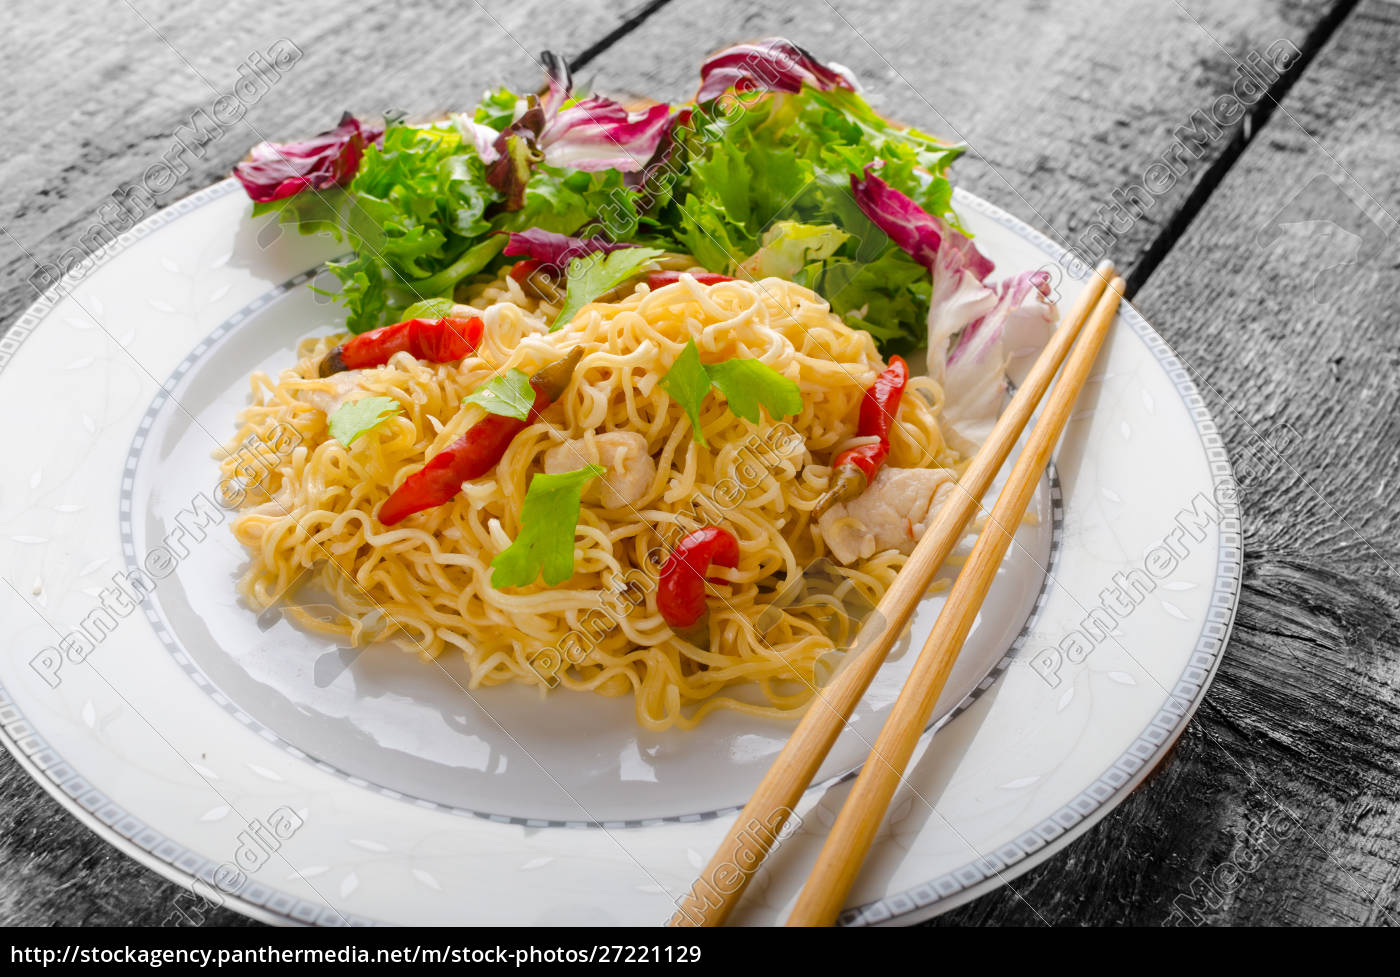 Chinesische Nudeln mit Huhn und frischem Salat - Lizenzfreies Bild ...